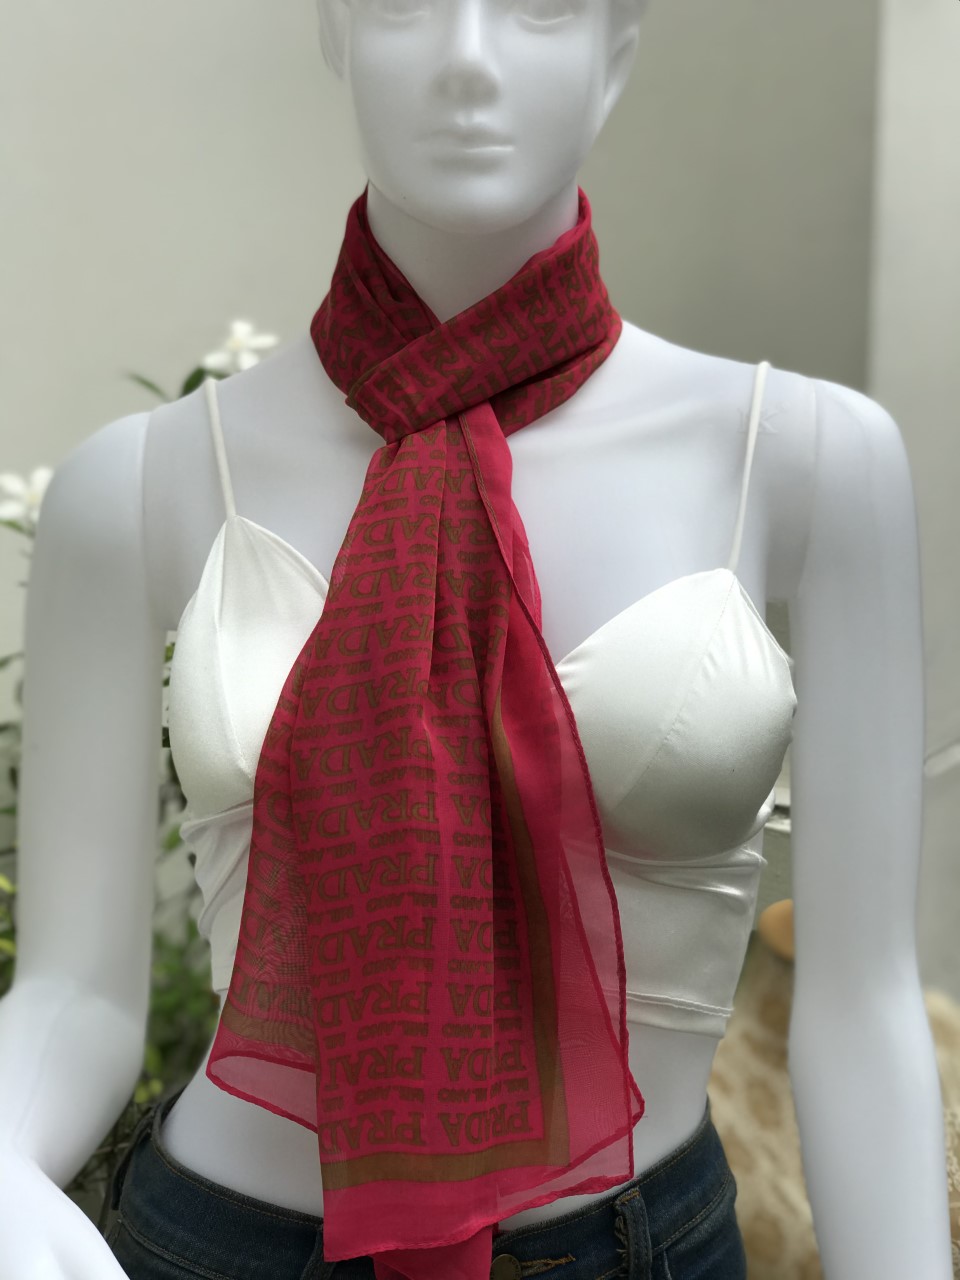 ผ้าพันคอชีฟอง ลายสวย เนื้อผ้านุ่ม  สำหรับสาว ๆ  สามารถใช้เป็นผ้าคลุมไหล่ก็ได้ค่ะ  รหัส CCO1002  (Chiffon scarf - Women Fashion)